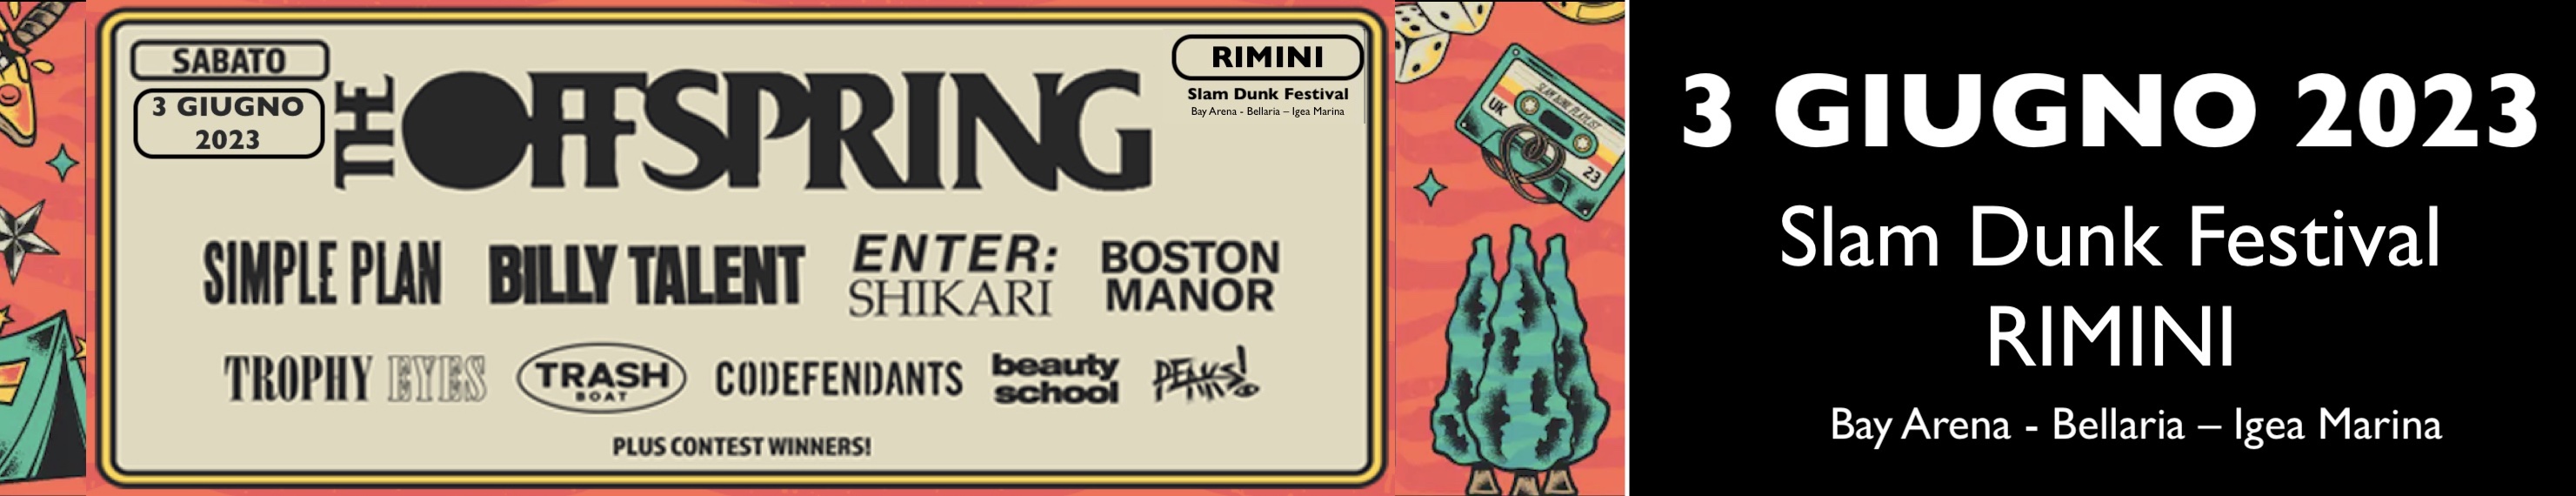 TheOffspring Rimini Slam Dunk Festival 2023